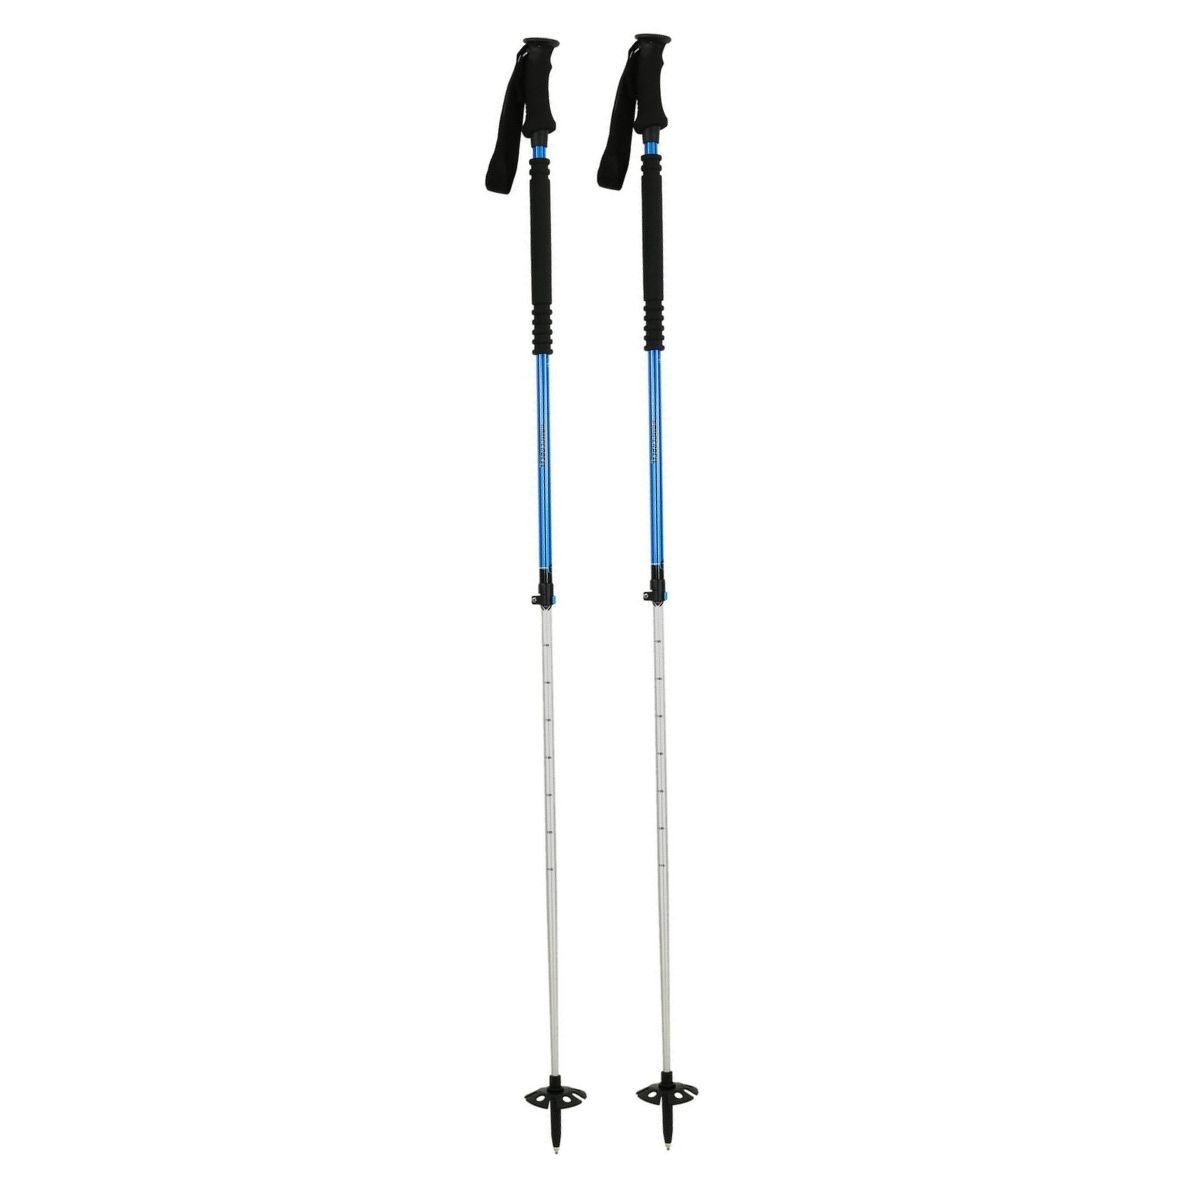 Komperdell Thermo Ascent Ti 2 - Ski poles